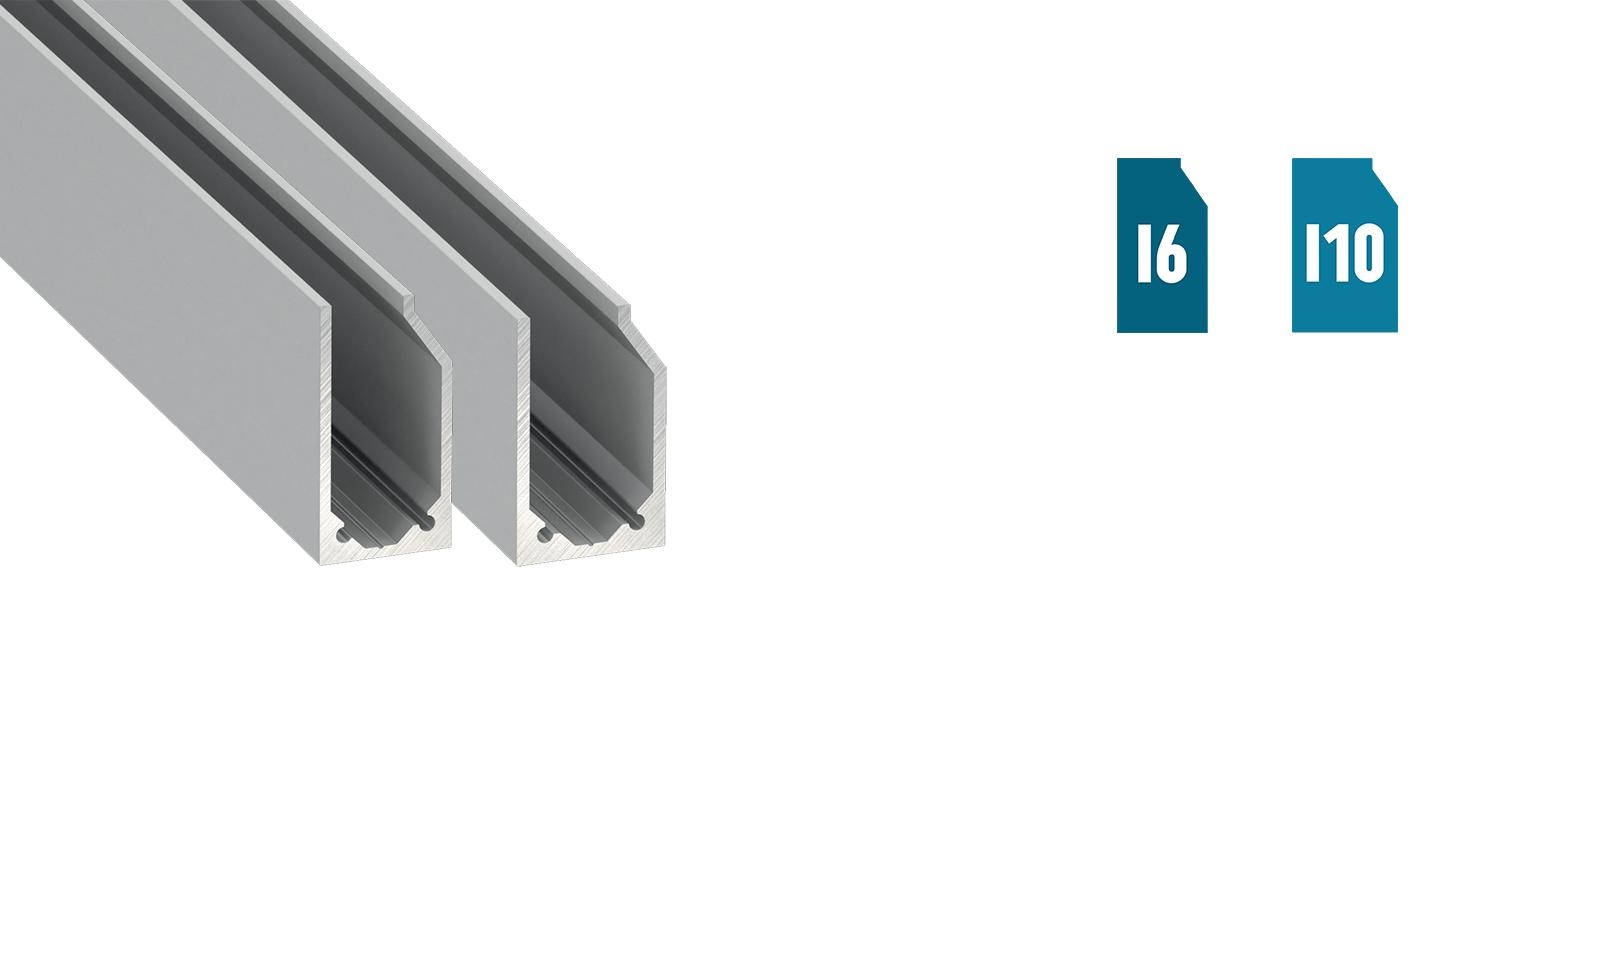 LUMINES "I6" / "I10" profilé pour des plaques verre/plexiglass